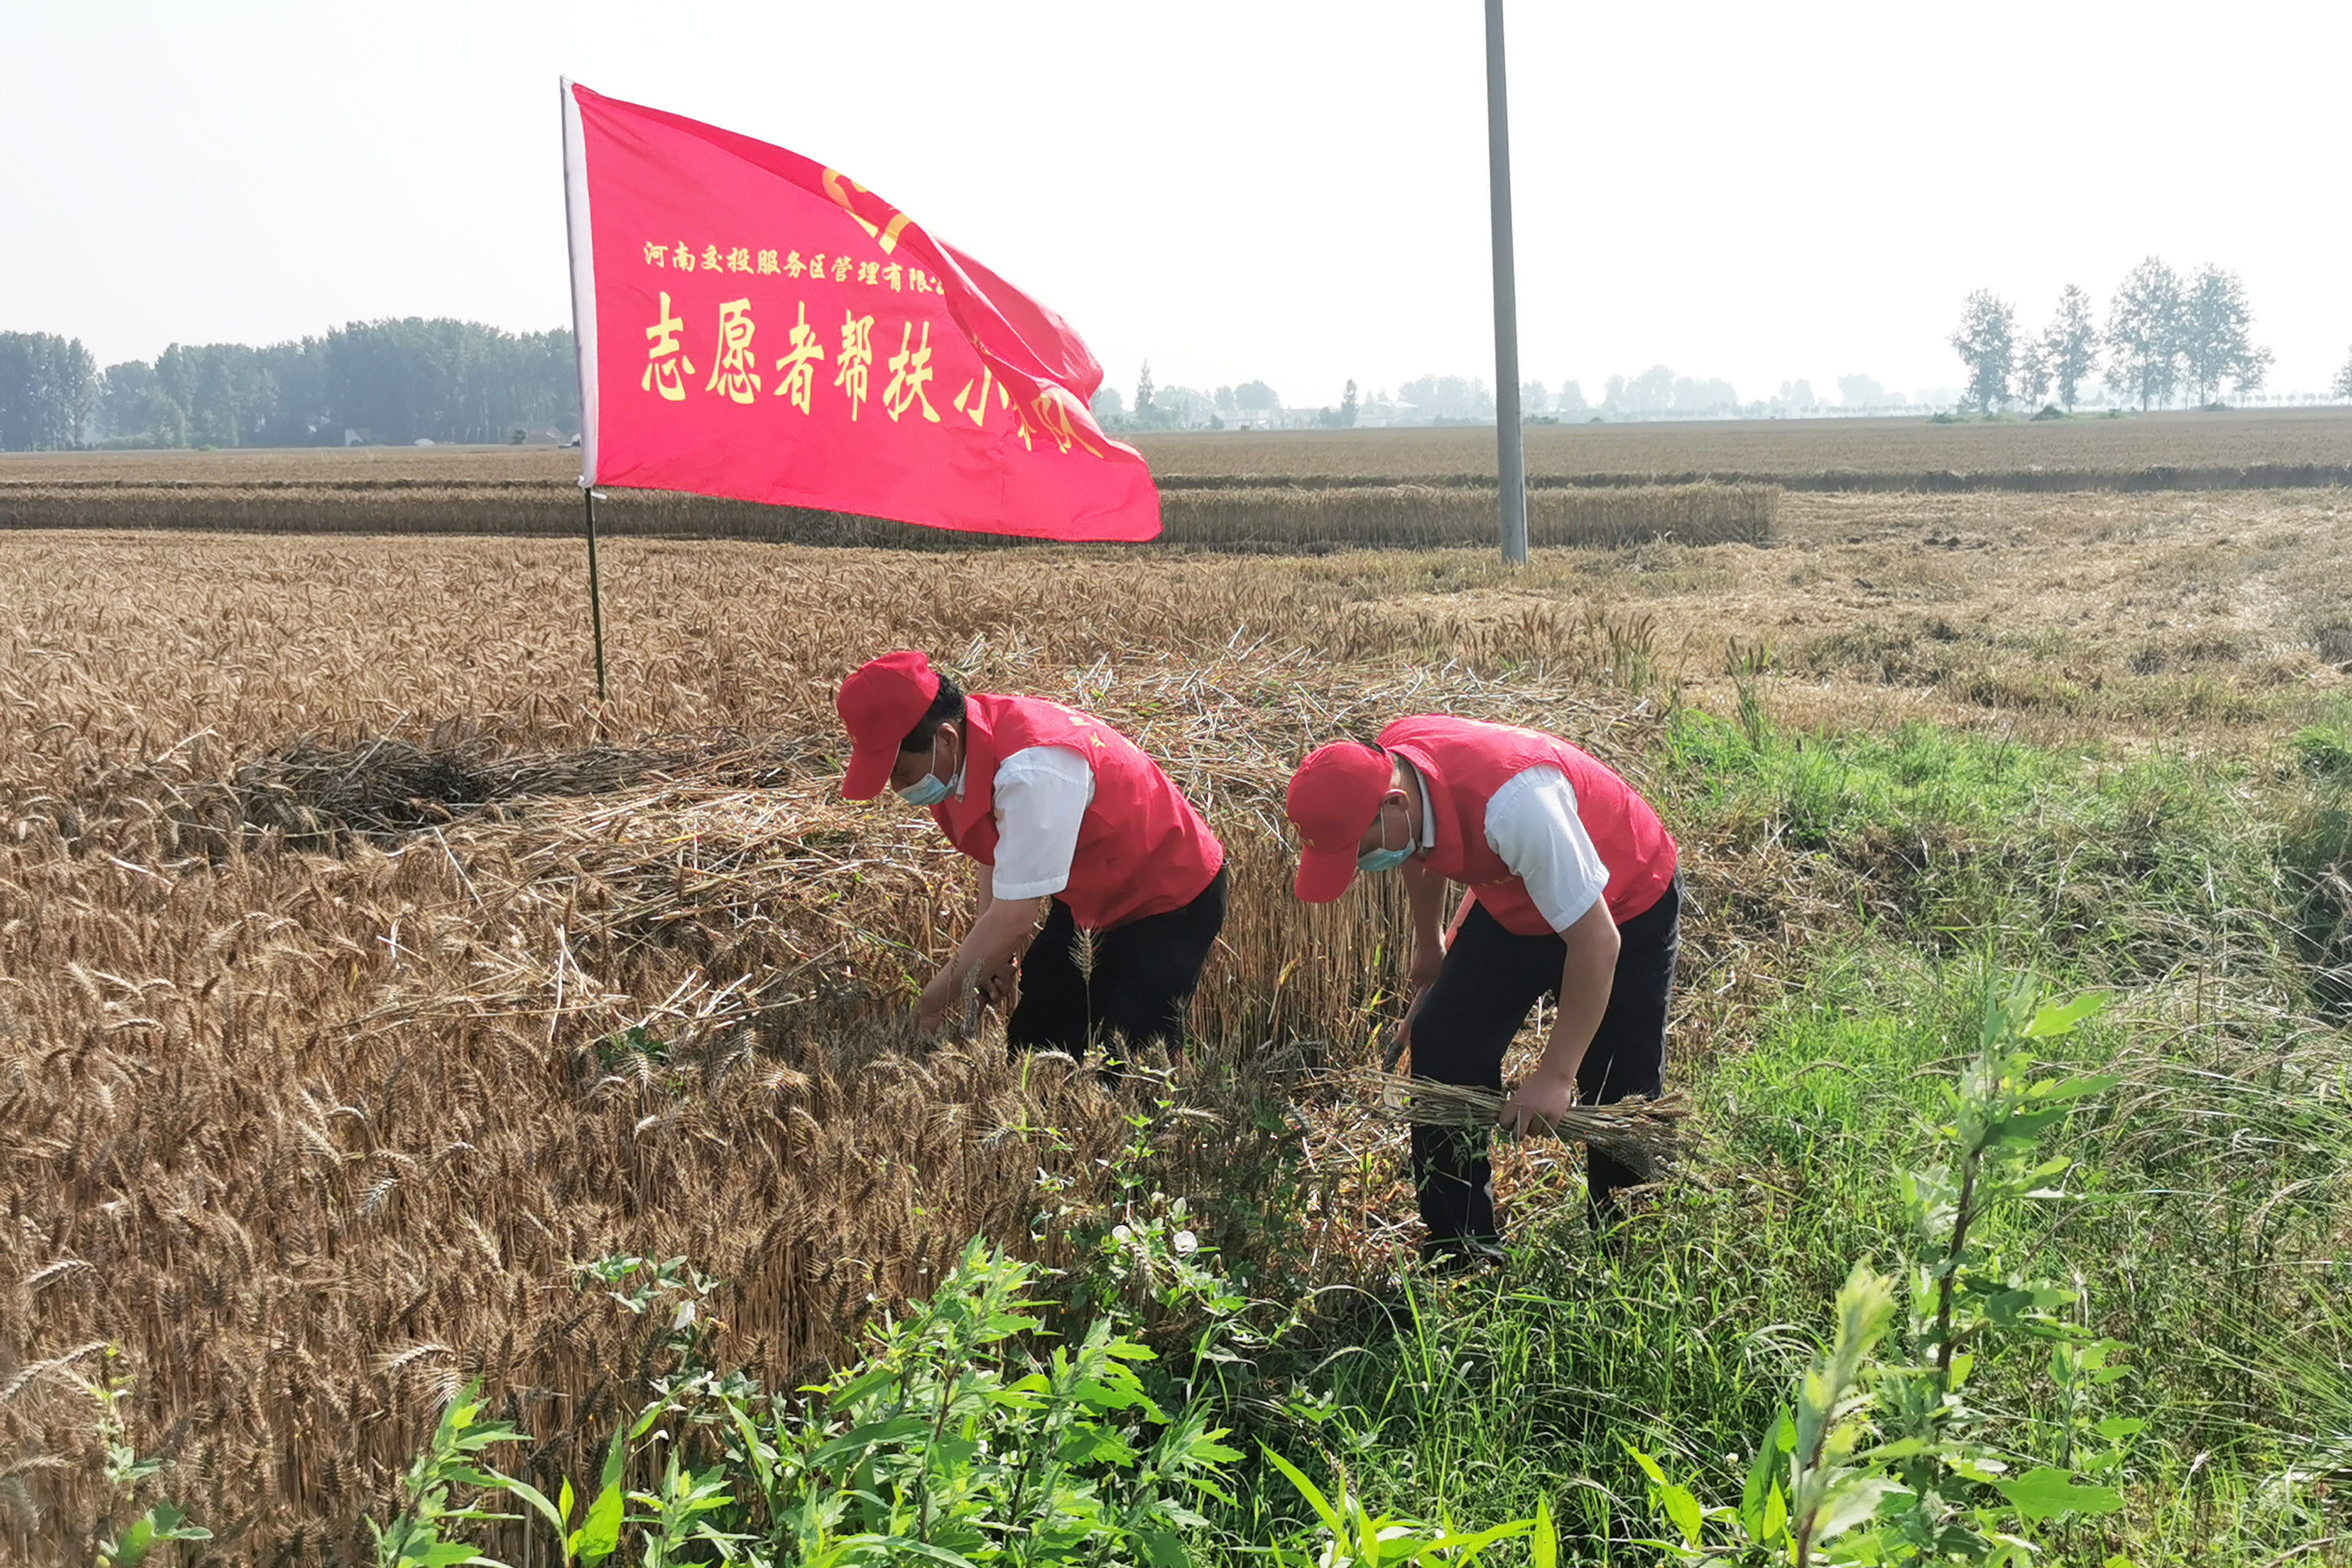 正阳北服务区成立“三夏”志愿服务队，前往附近村庄帮助农户抢收小麦。拍摄人：周君娅.jpg